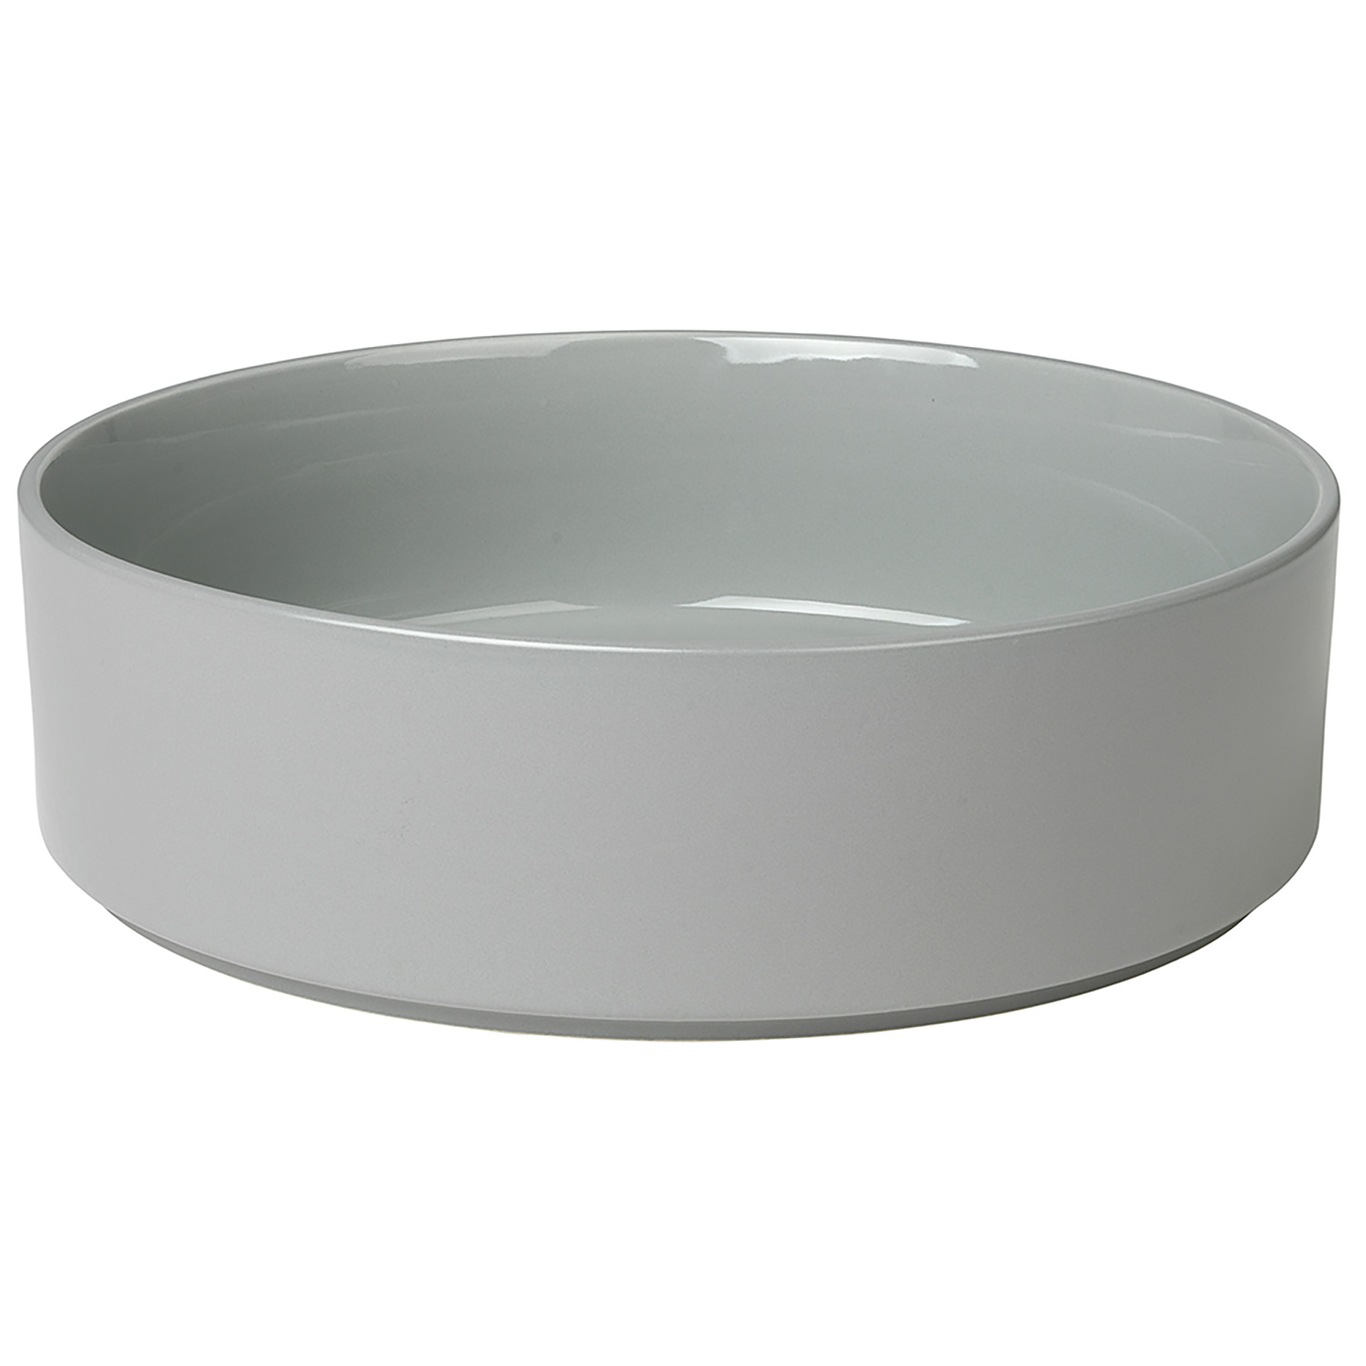 Pilar Bowl Mirage Grey, 27 cm